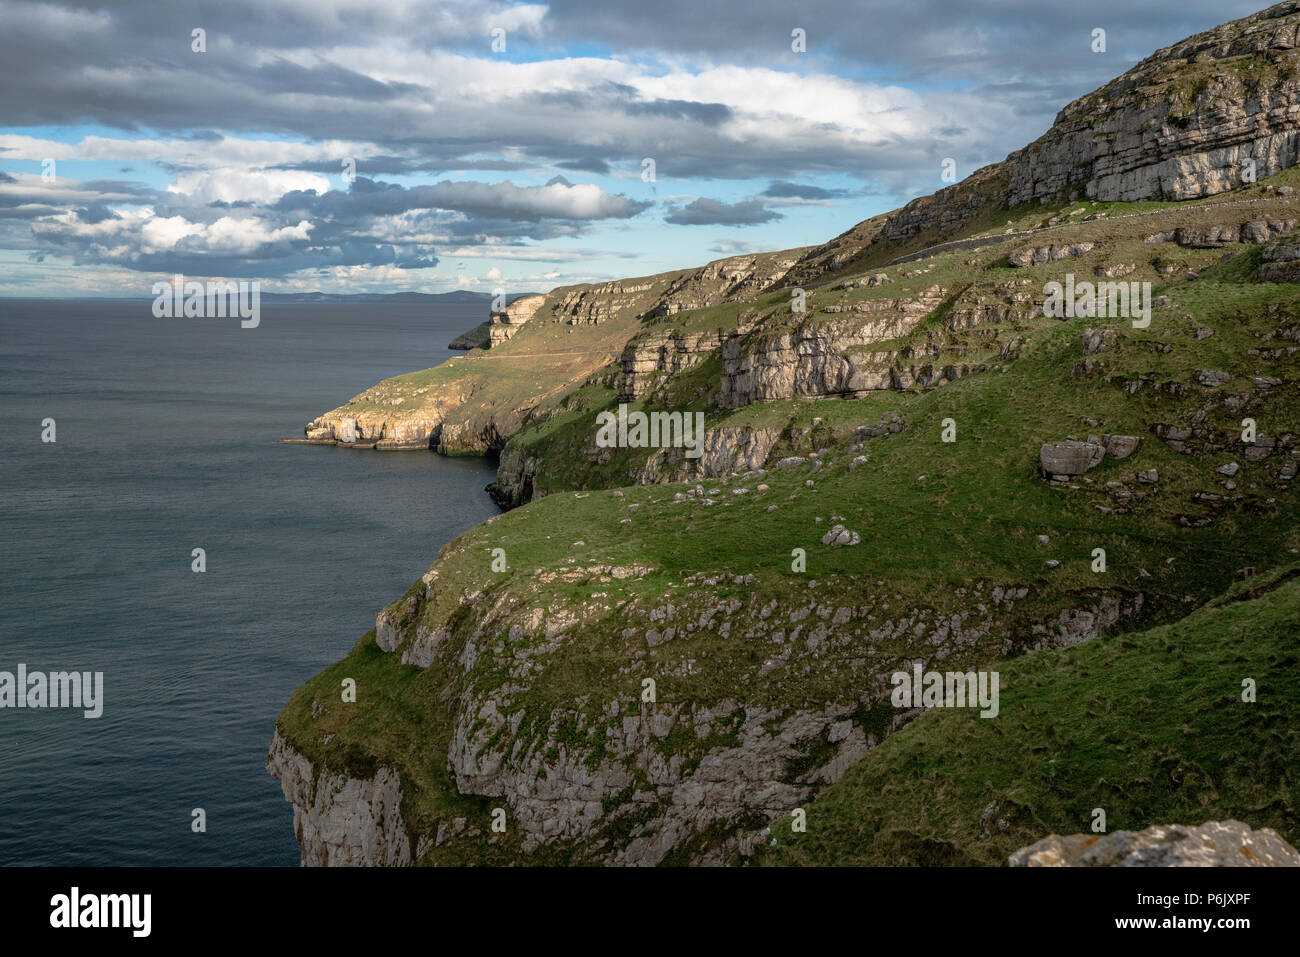 North Wales paisaje de gran orme cabeza de acantilados y el océano. Foto de stock